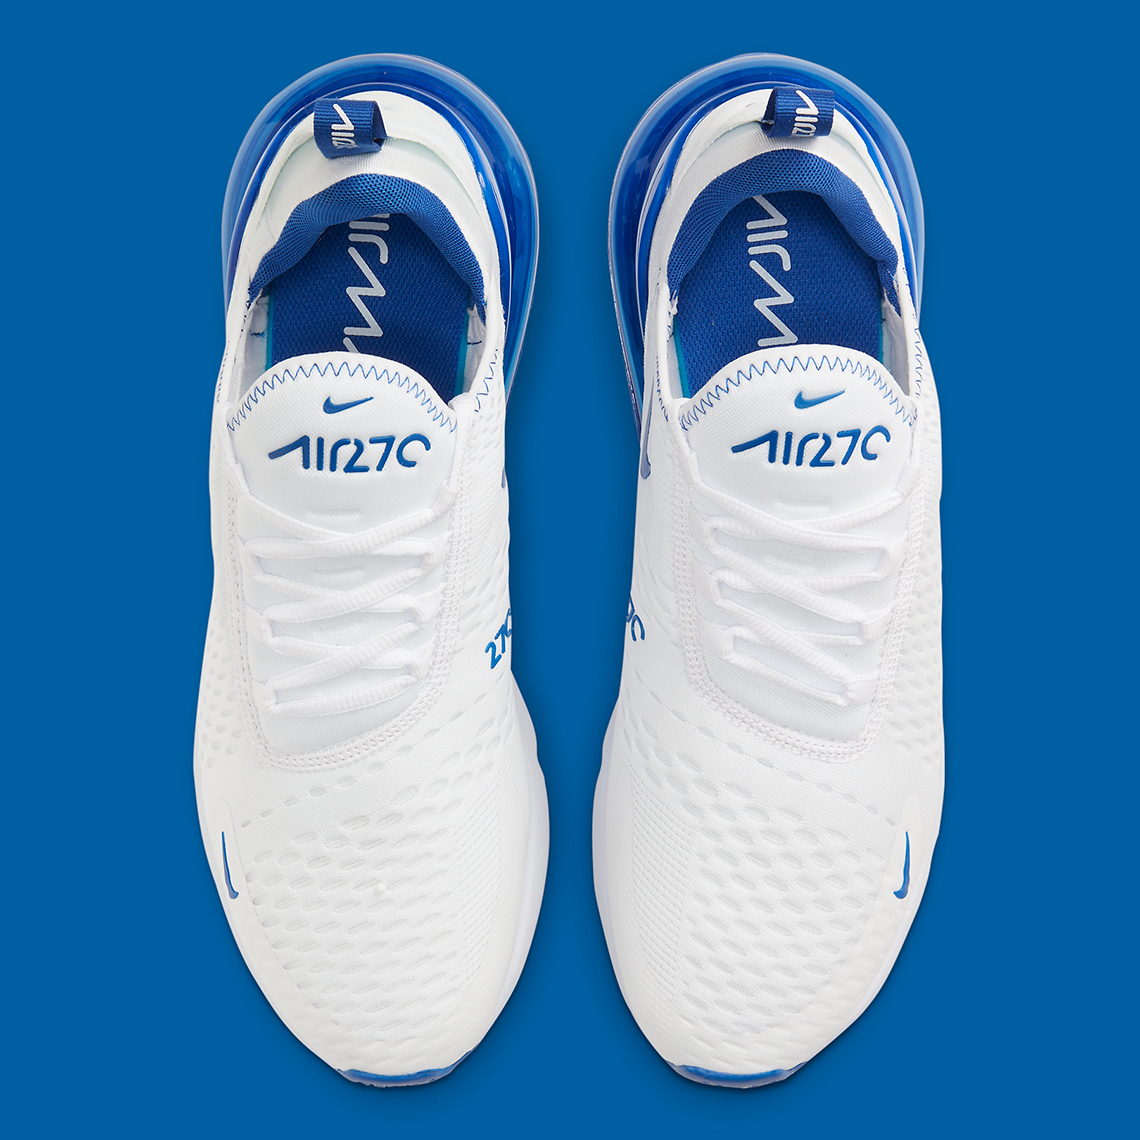 Nike mens nike air 270 Air Max 270 White Blue DH0268-100 Release Info | SneakerNews.com